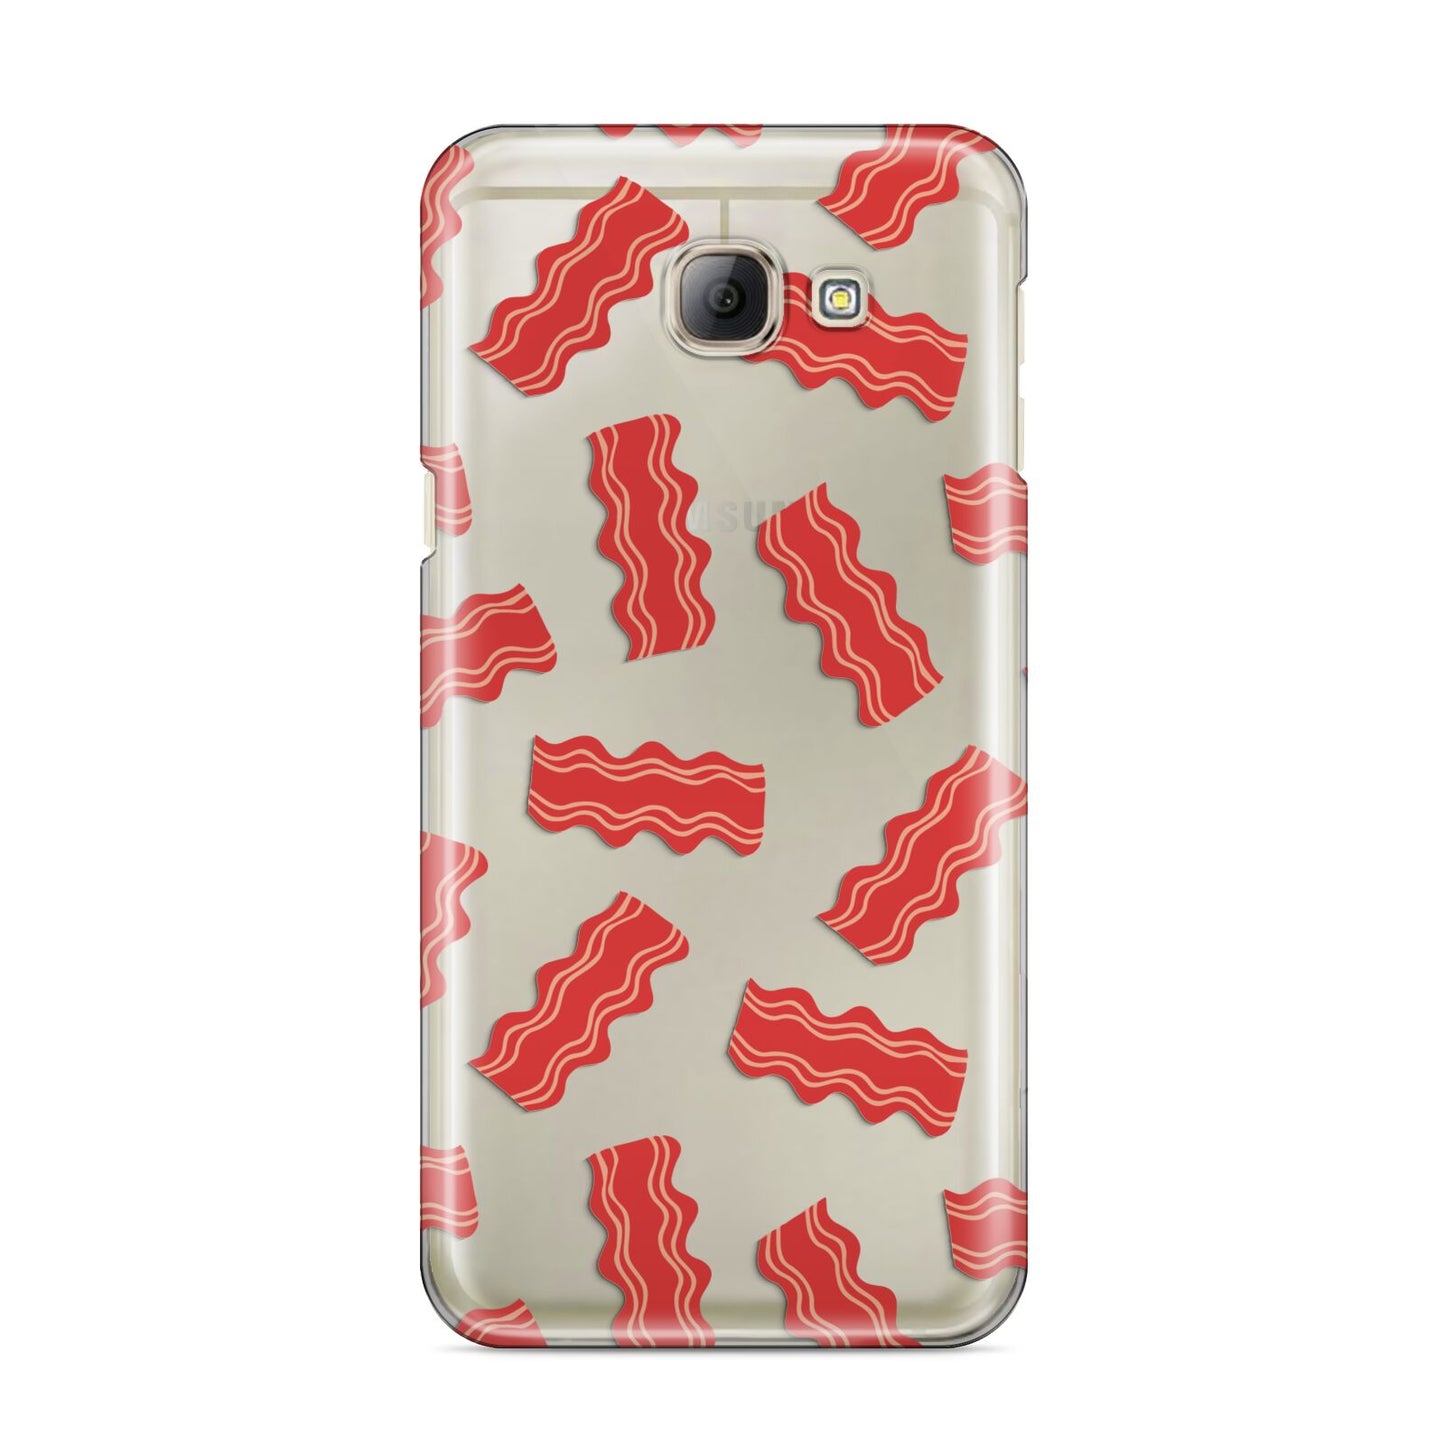 Bacon Samsung Galaxy A8 2016 Case